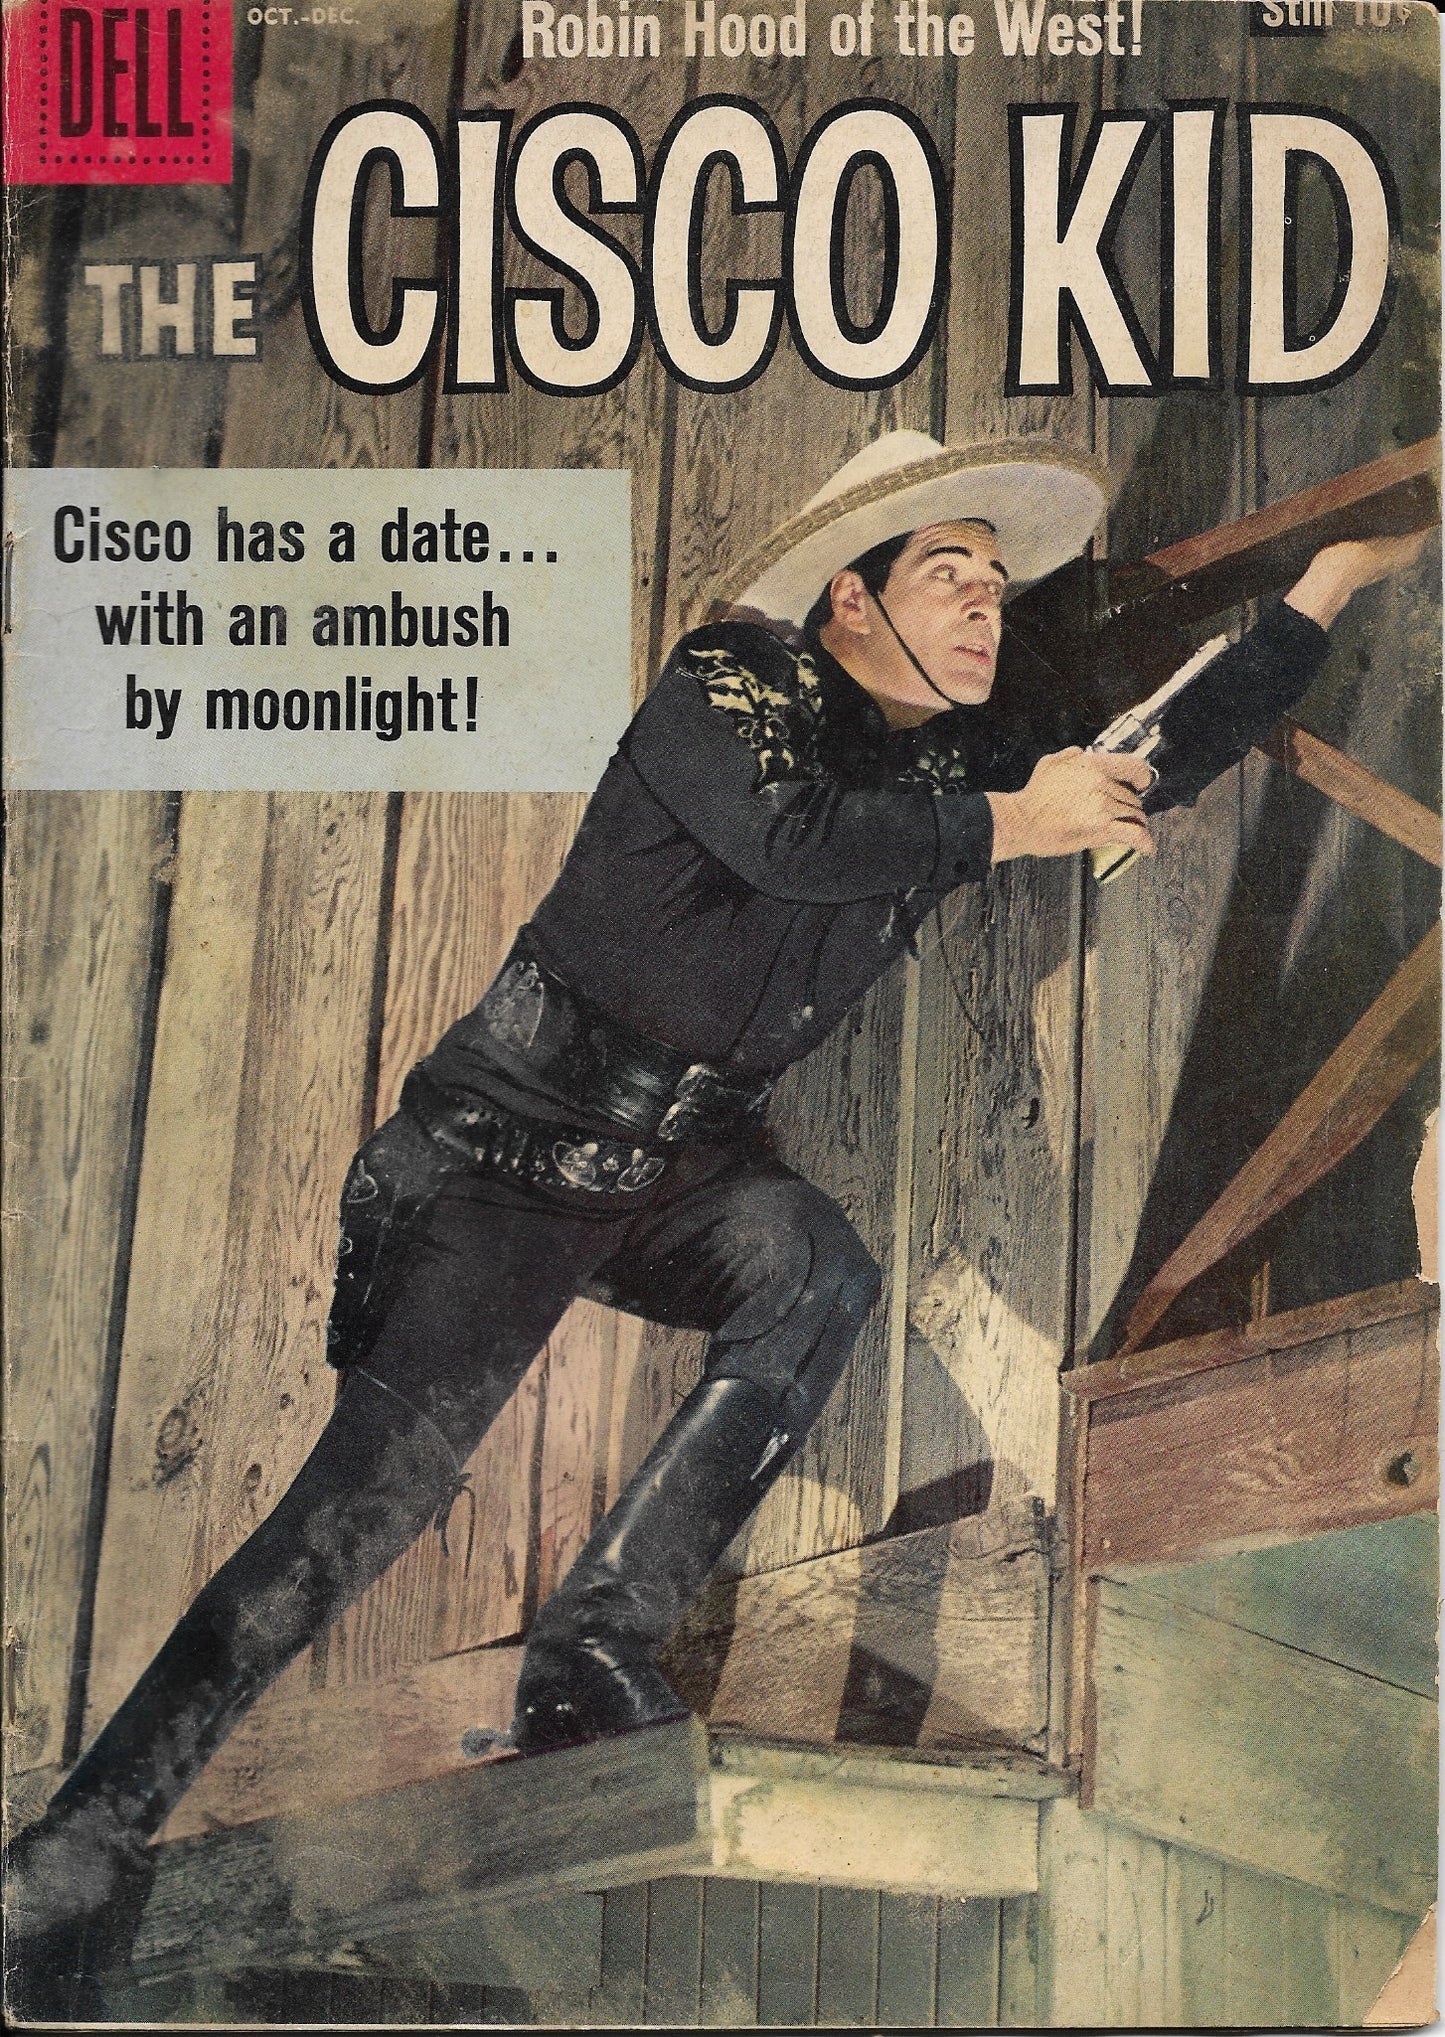 The Cisco Kid No. 41, Dell Comics, Oct-Dec 1958